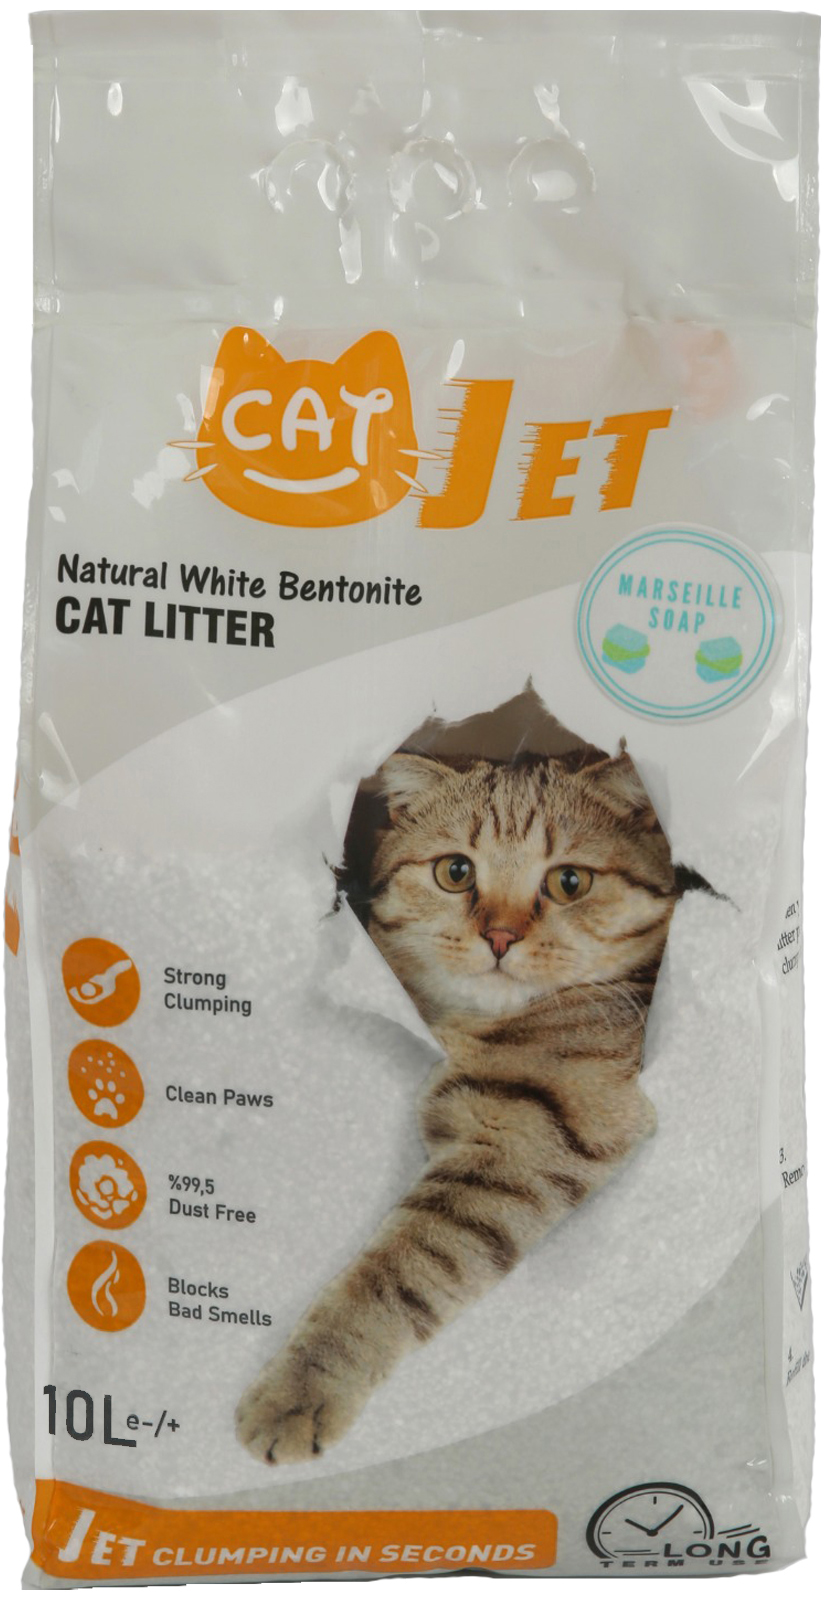 Наполнитель комкующийся CatJet для кошек, белый бентонит 0,60-2,38 мм 10 литров, Аромат марсельского мыла